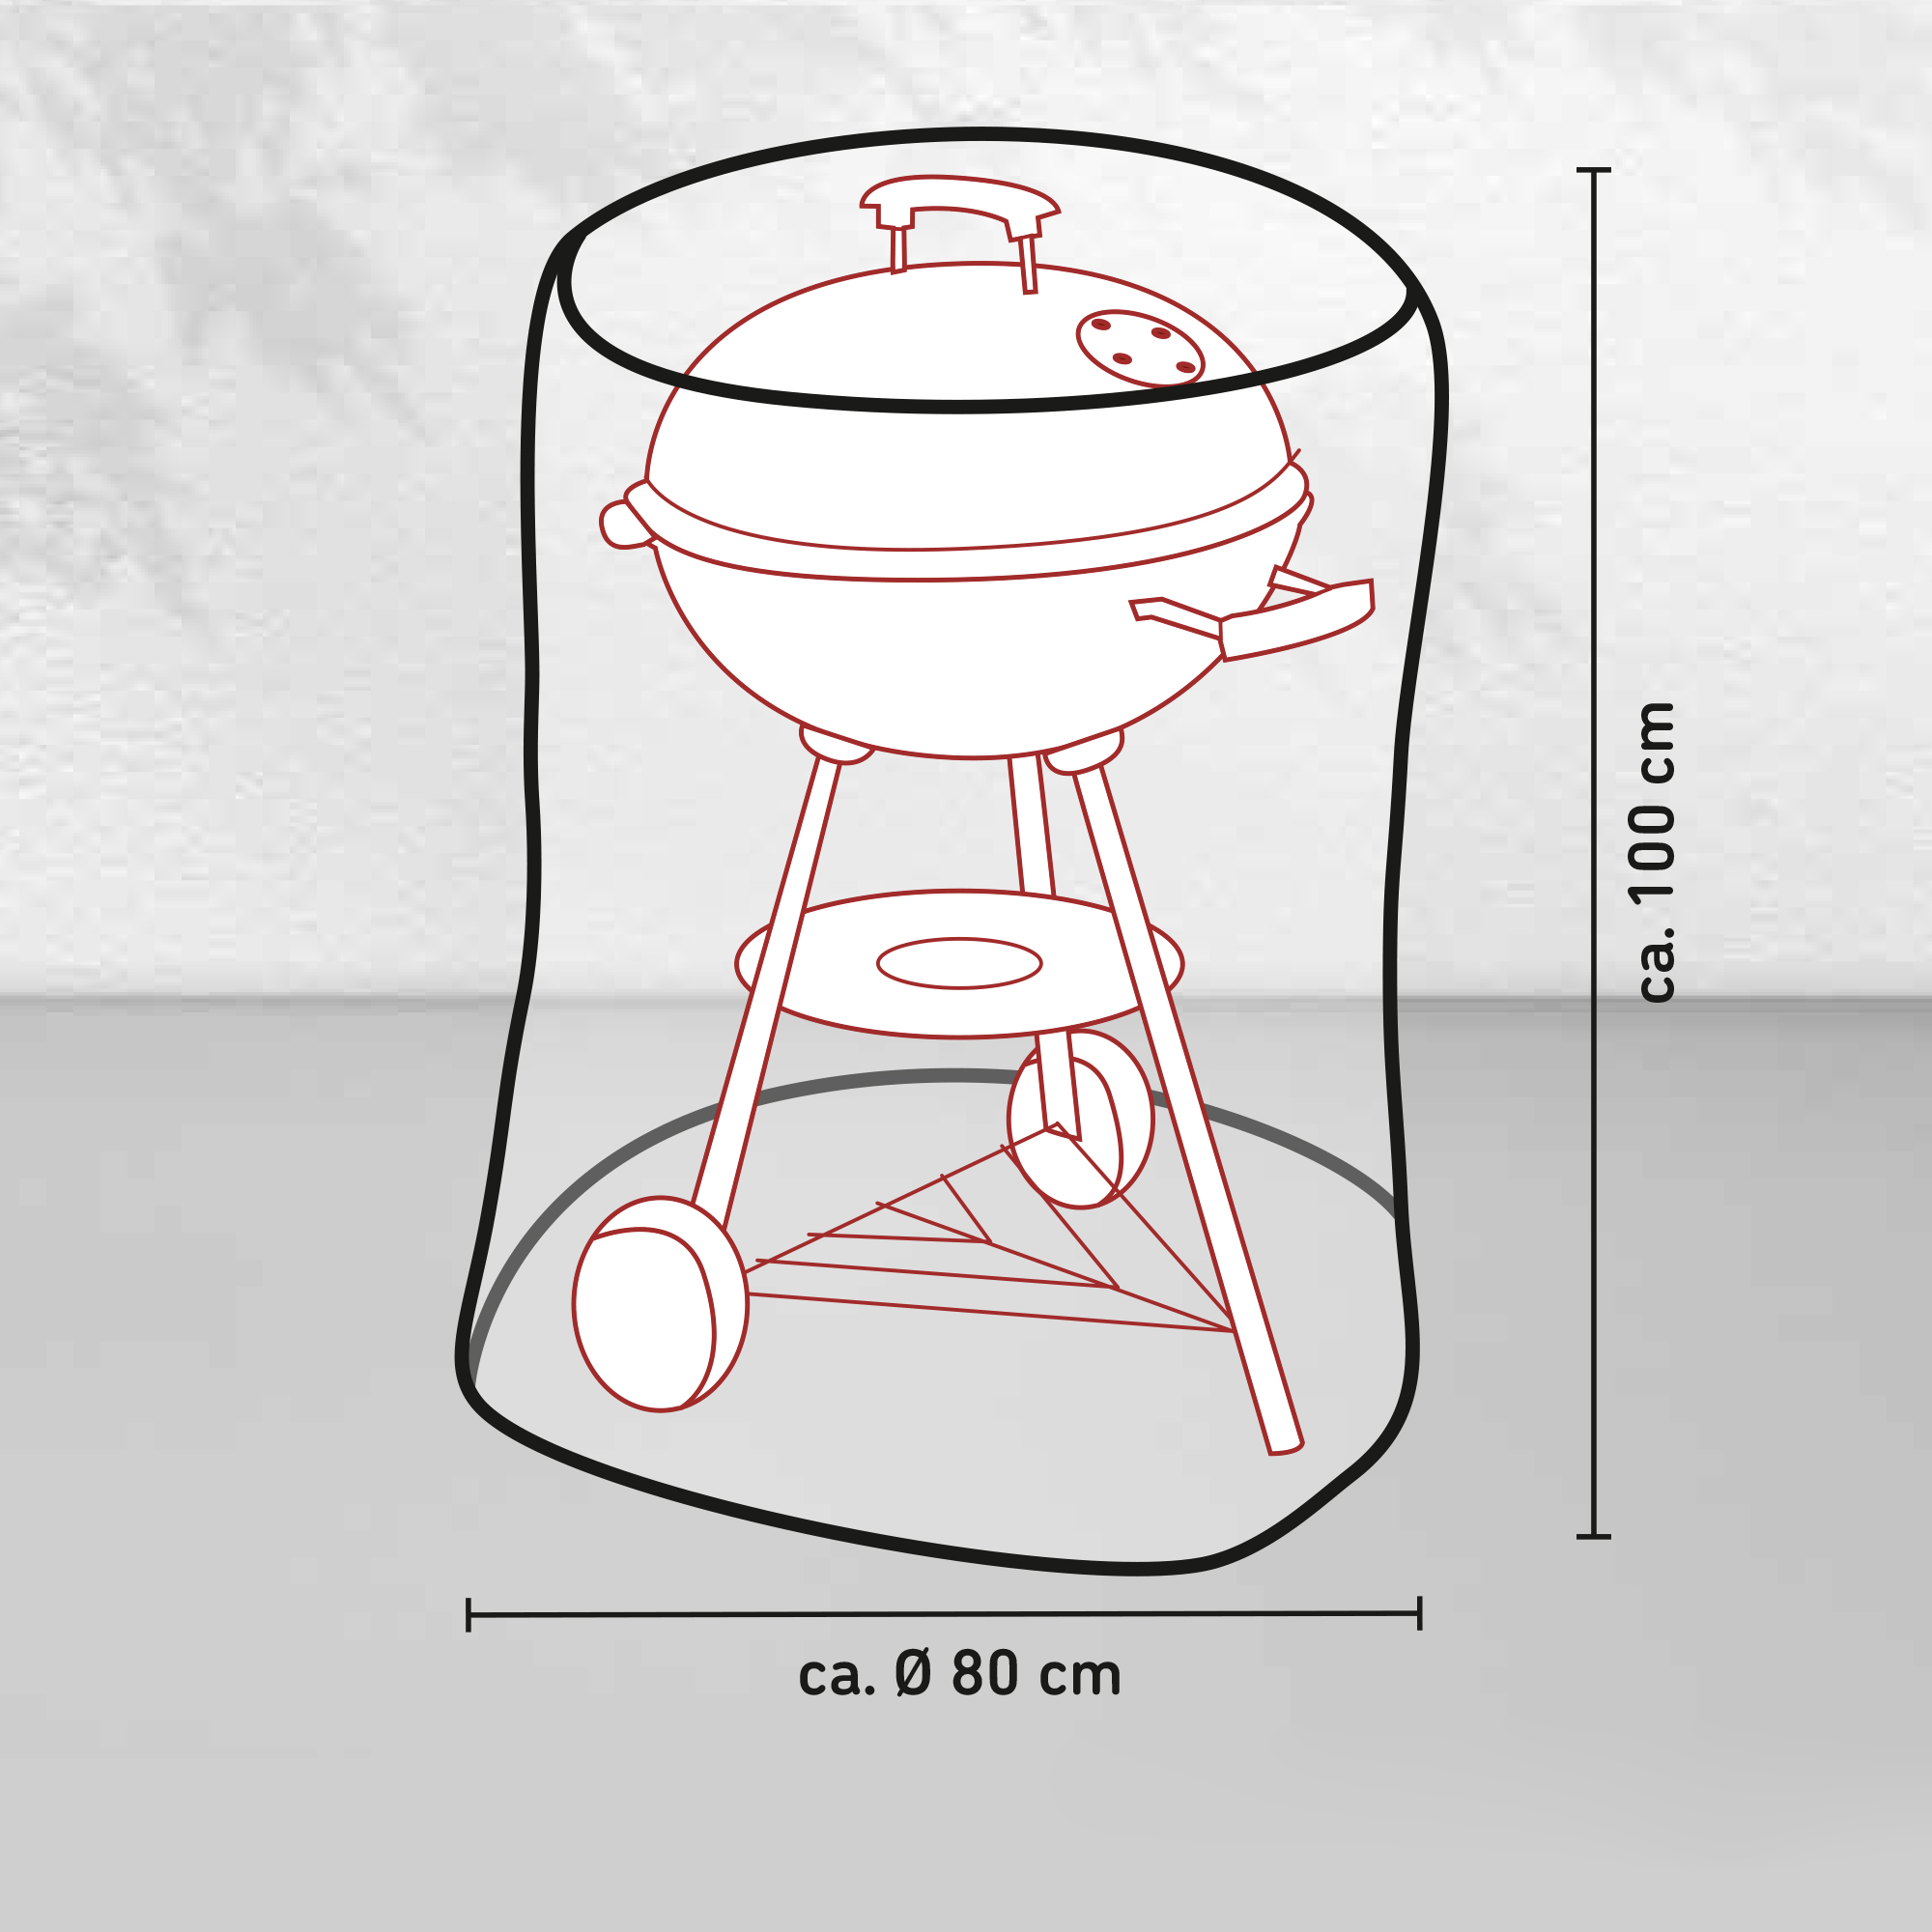 Kugelgrill-Schutzhülle für Grills mit Ø 80 cm + product picture